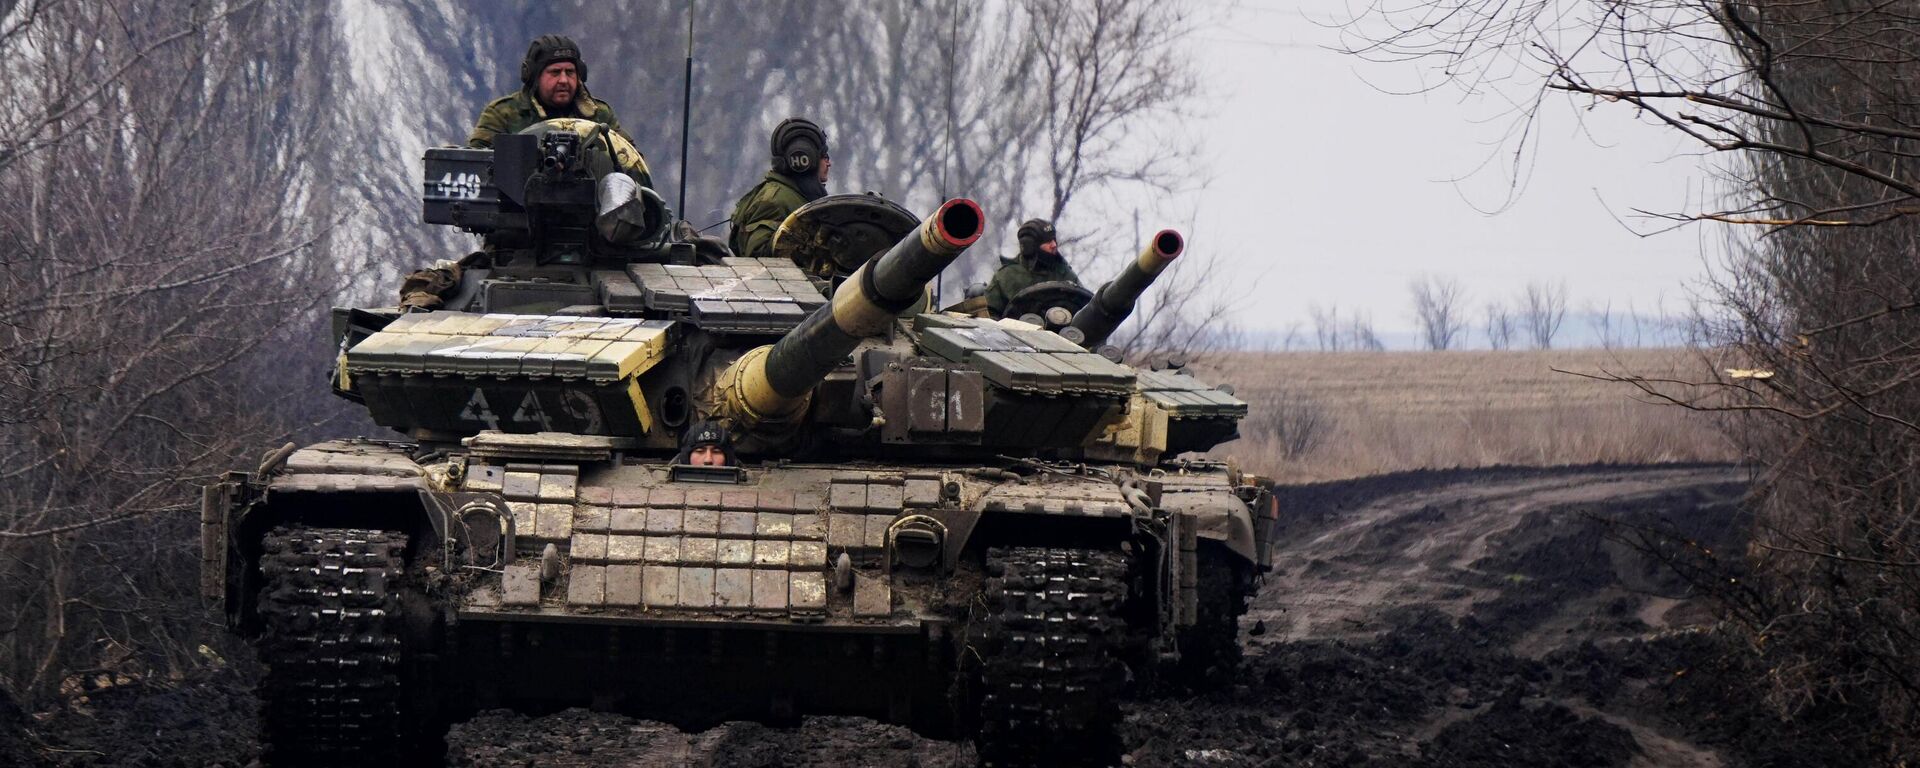 DPR liaudies milicijos tankai T-72 - Sputnik Lietuva, 1920, 18.03.2022